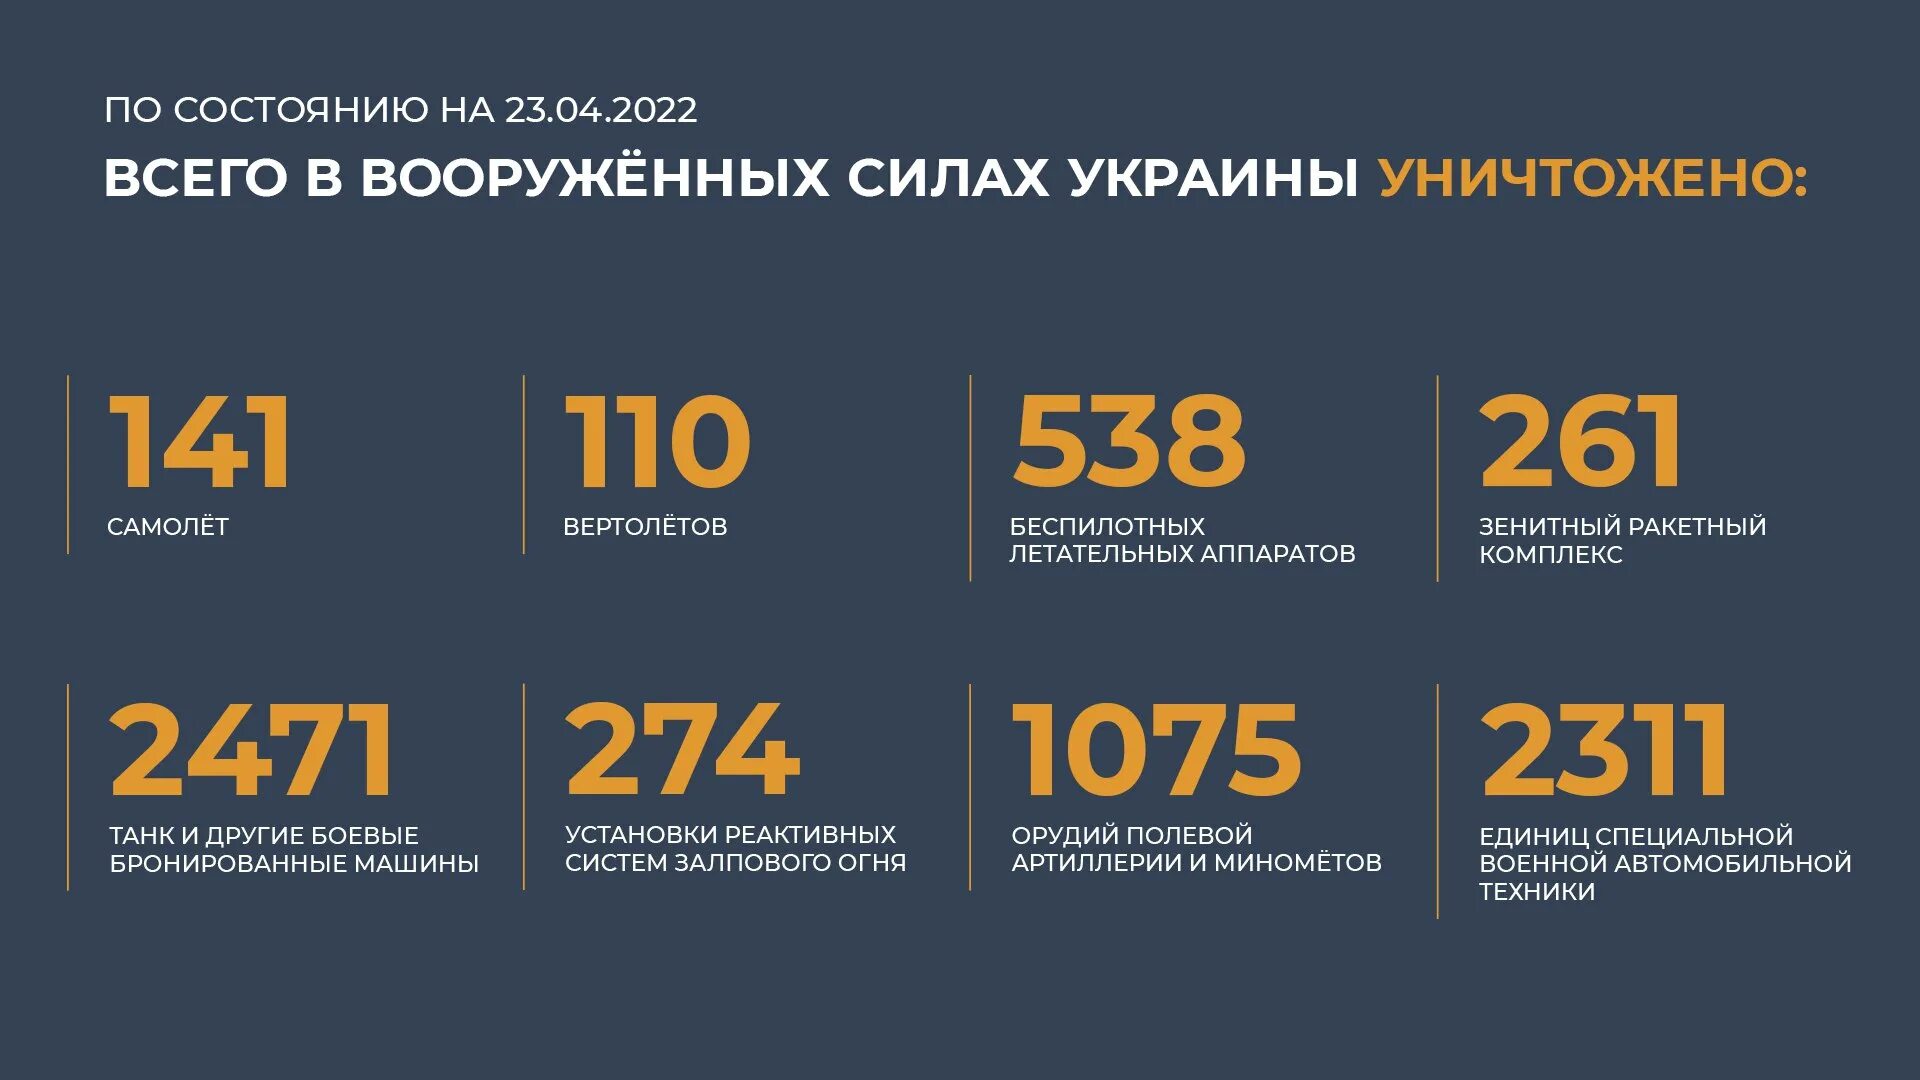 Сколько погибших по данным украины. Потери Украины. Потери Украины на Украине сегодня 2022. Потери Украины на сегодня в цифрах. Общие потери России.